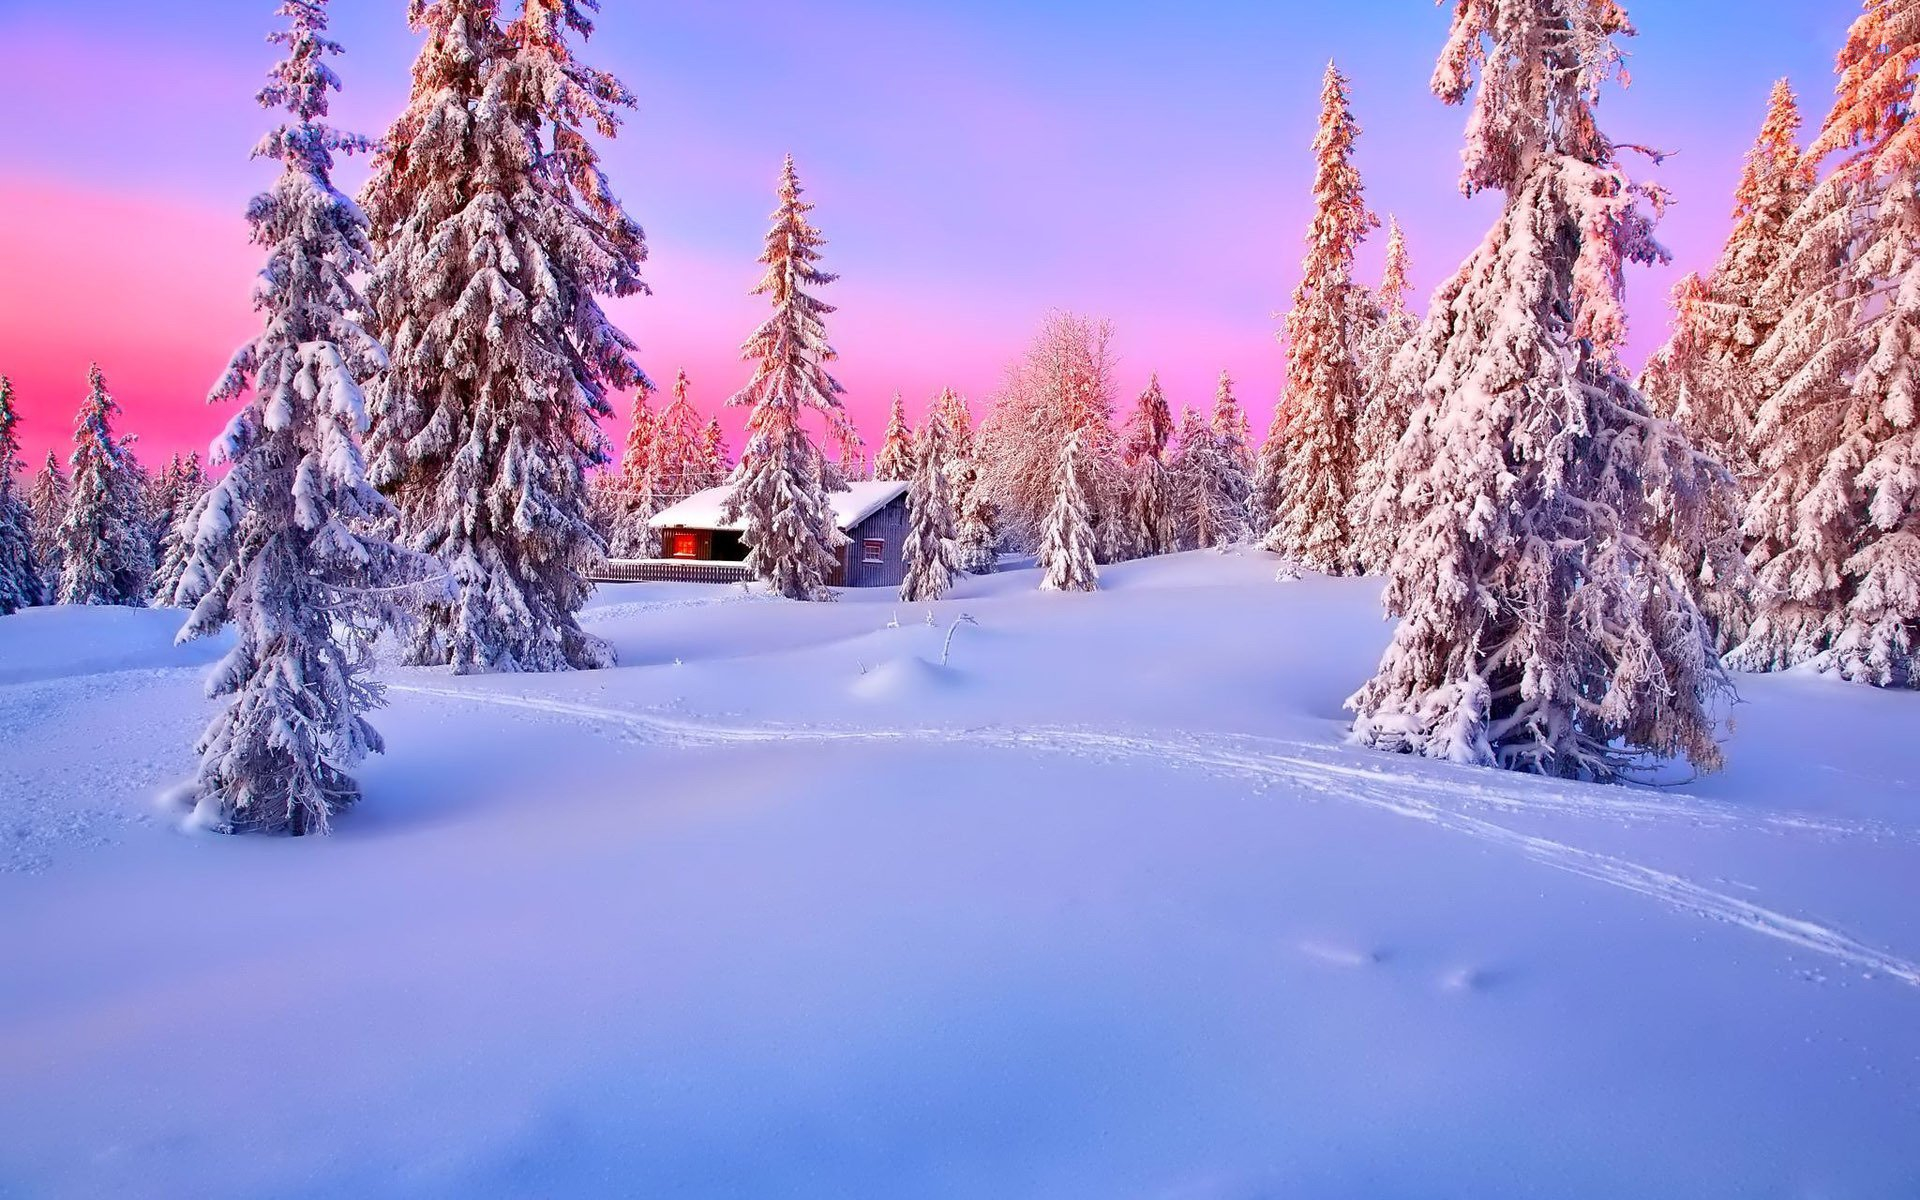 Скачать картинку Зима, Снег, Лес, Дерево, Домик, Фотографии в телефон бесплатно.